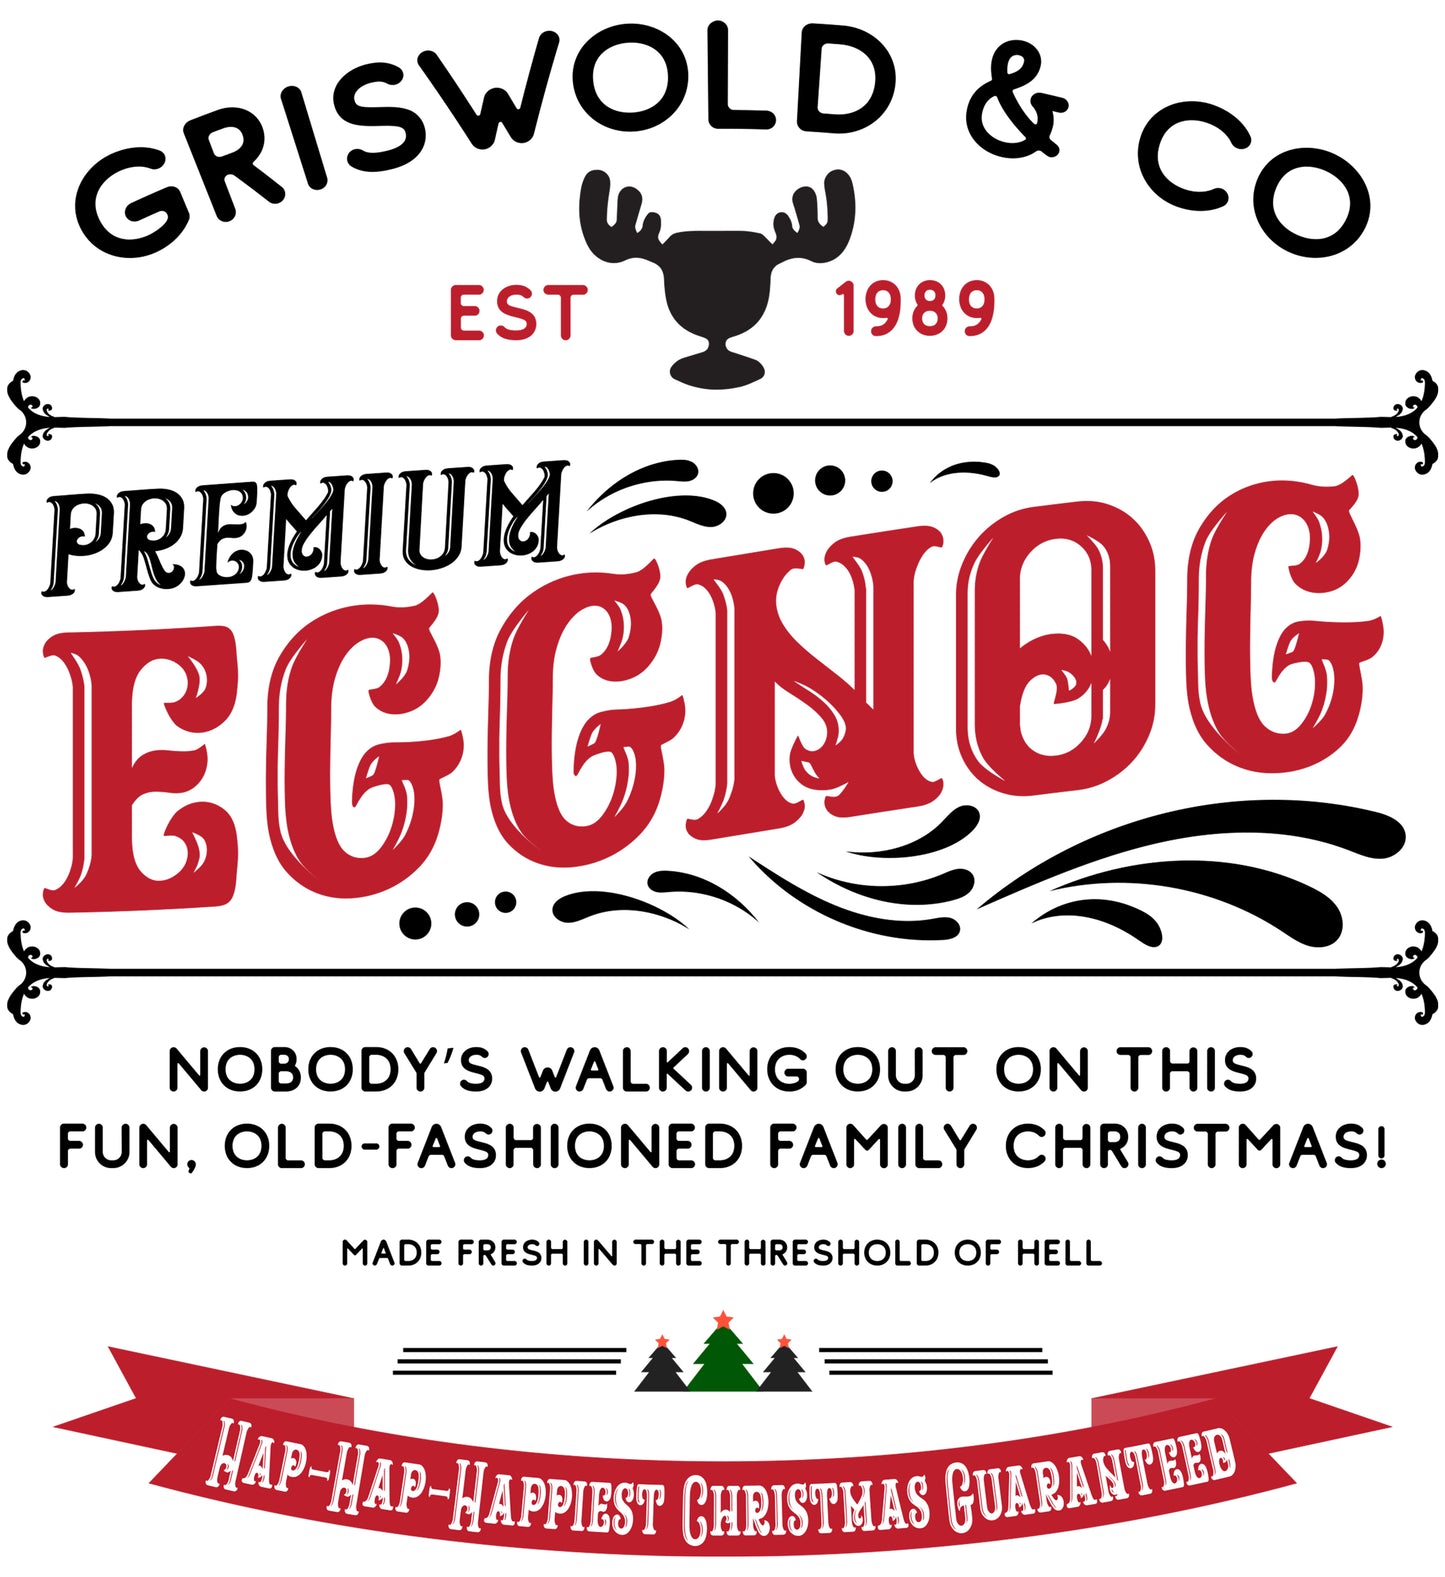 Griswold & Co. Eggnog